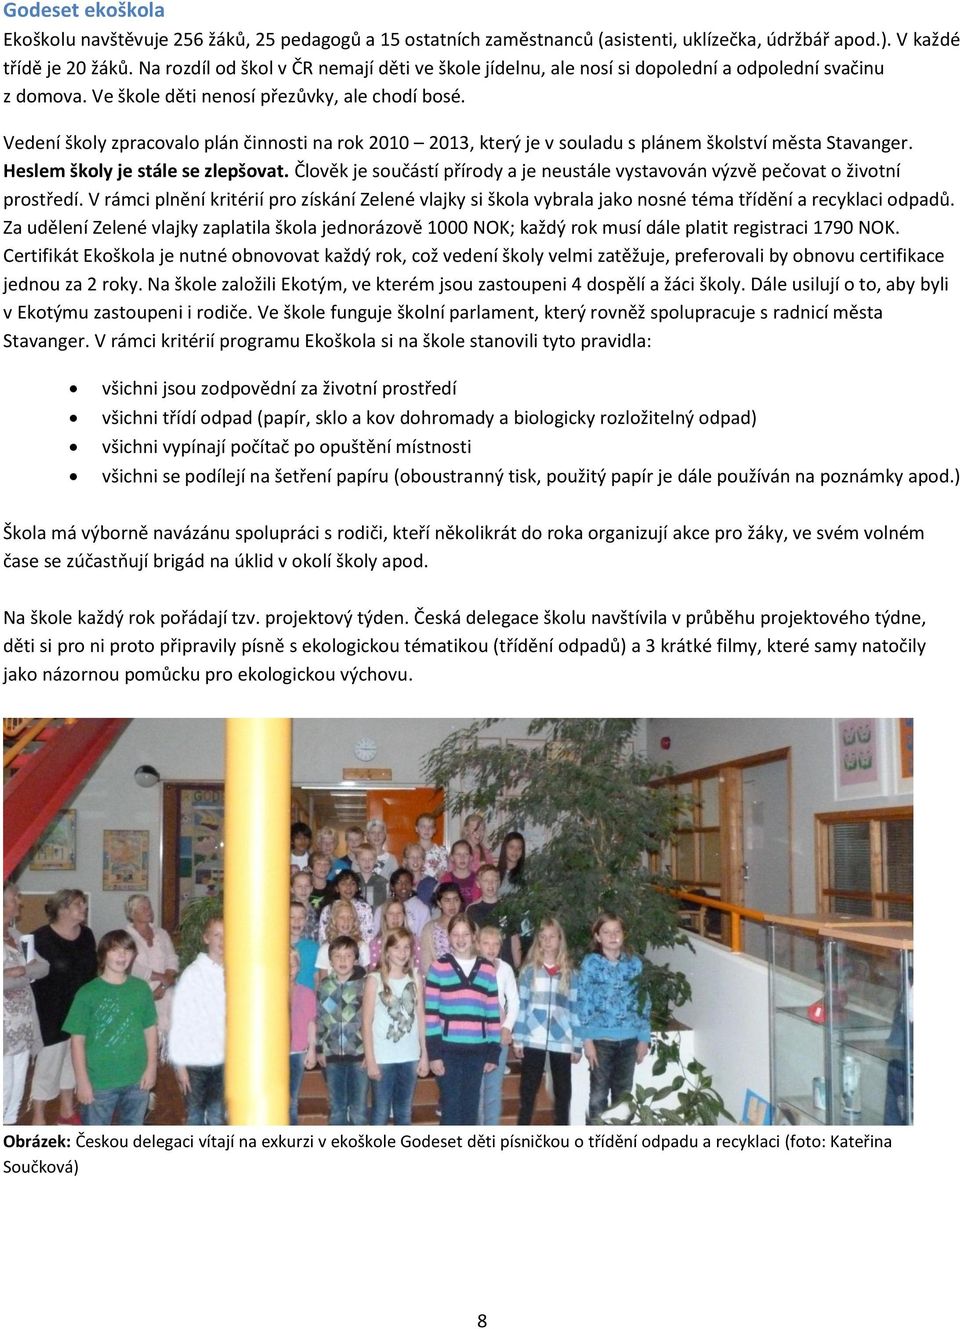 Vedení školy zpracovalo plán činnosti na rok 2010 2013, který je v souladu s plánem školství města Stavanger. Heslem školy je stále se zlepšovat.